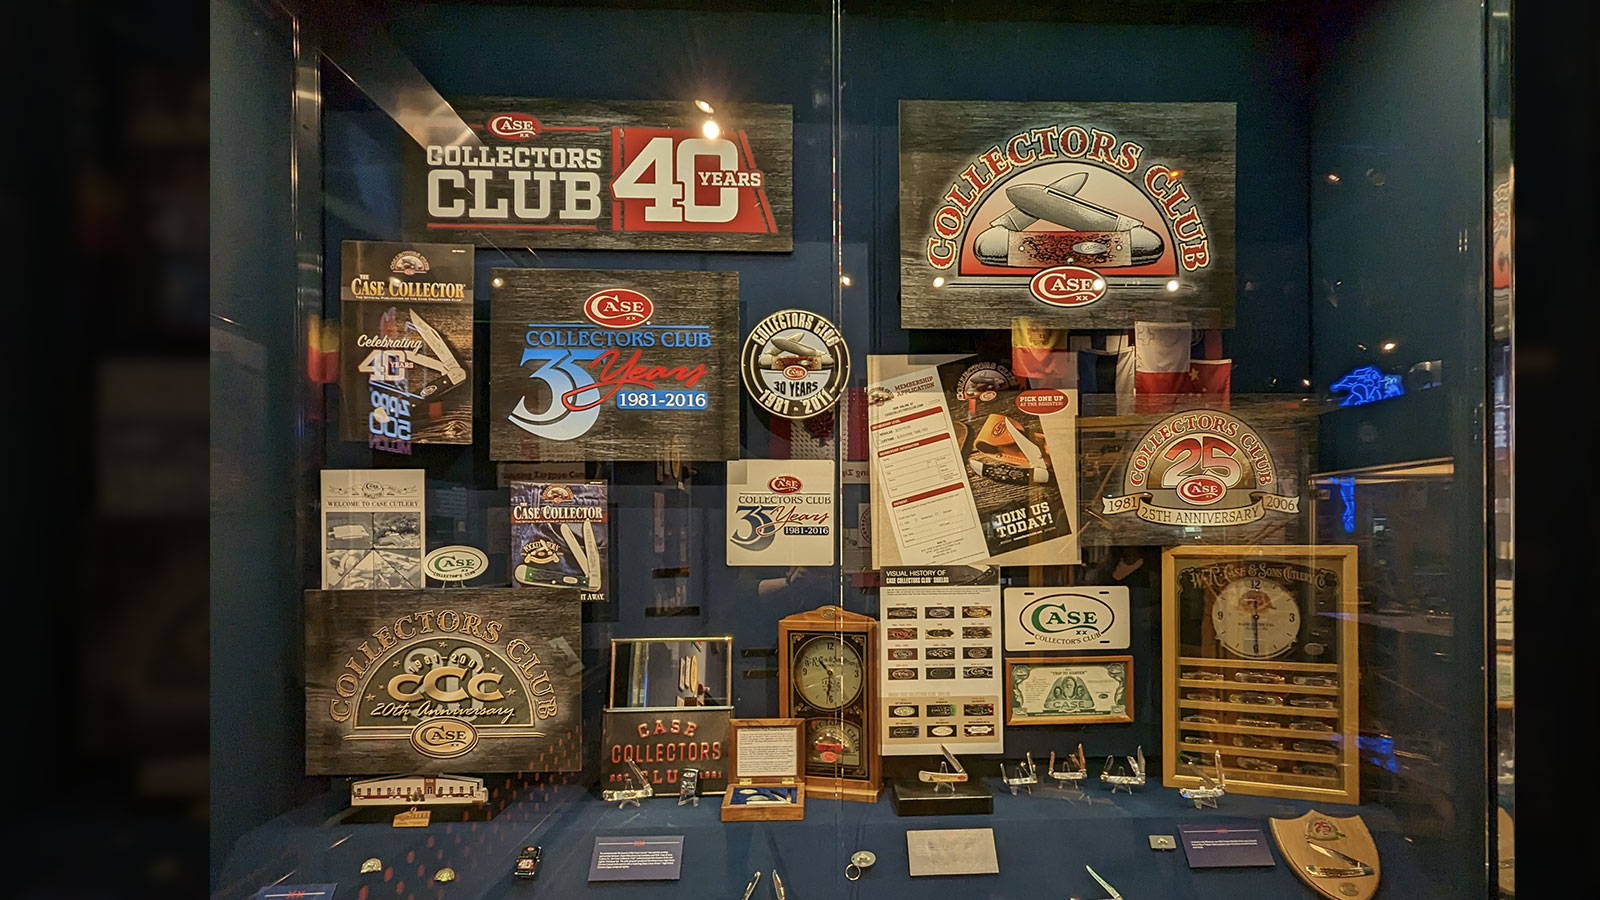 Case Collectors Club memorabilia.